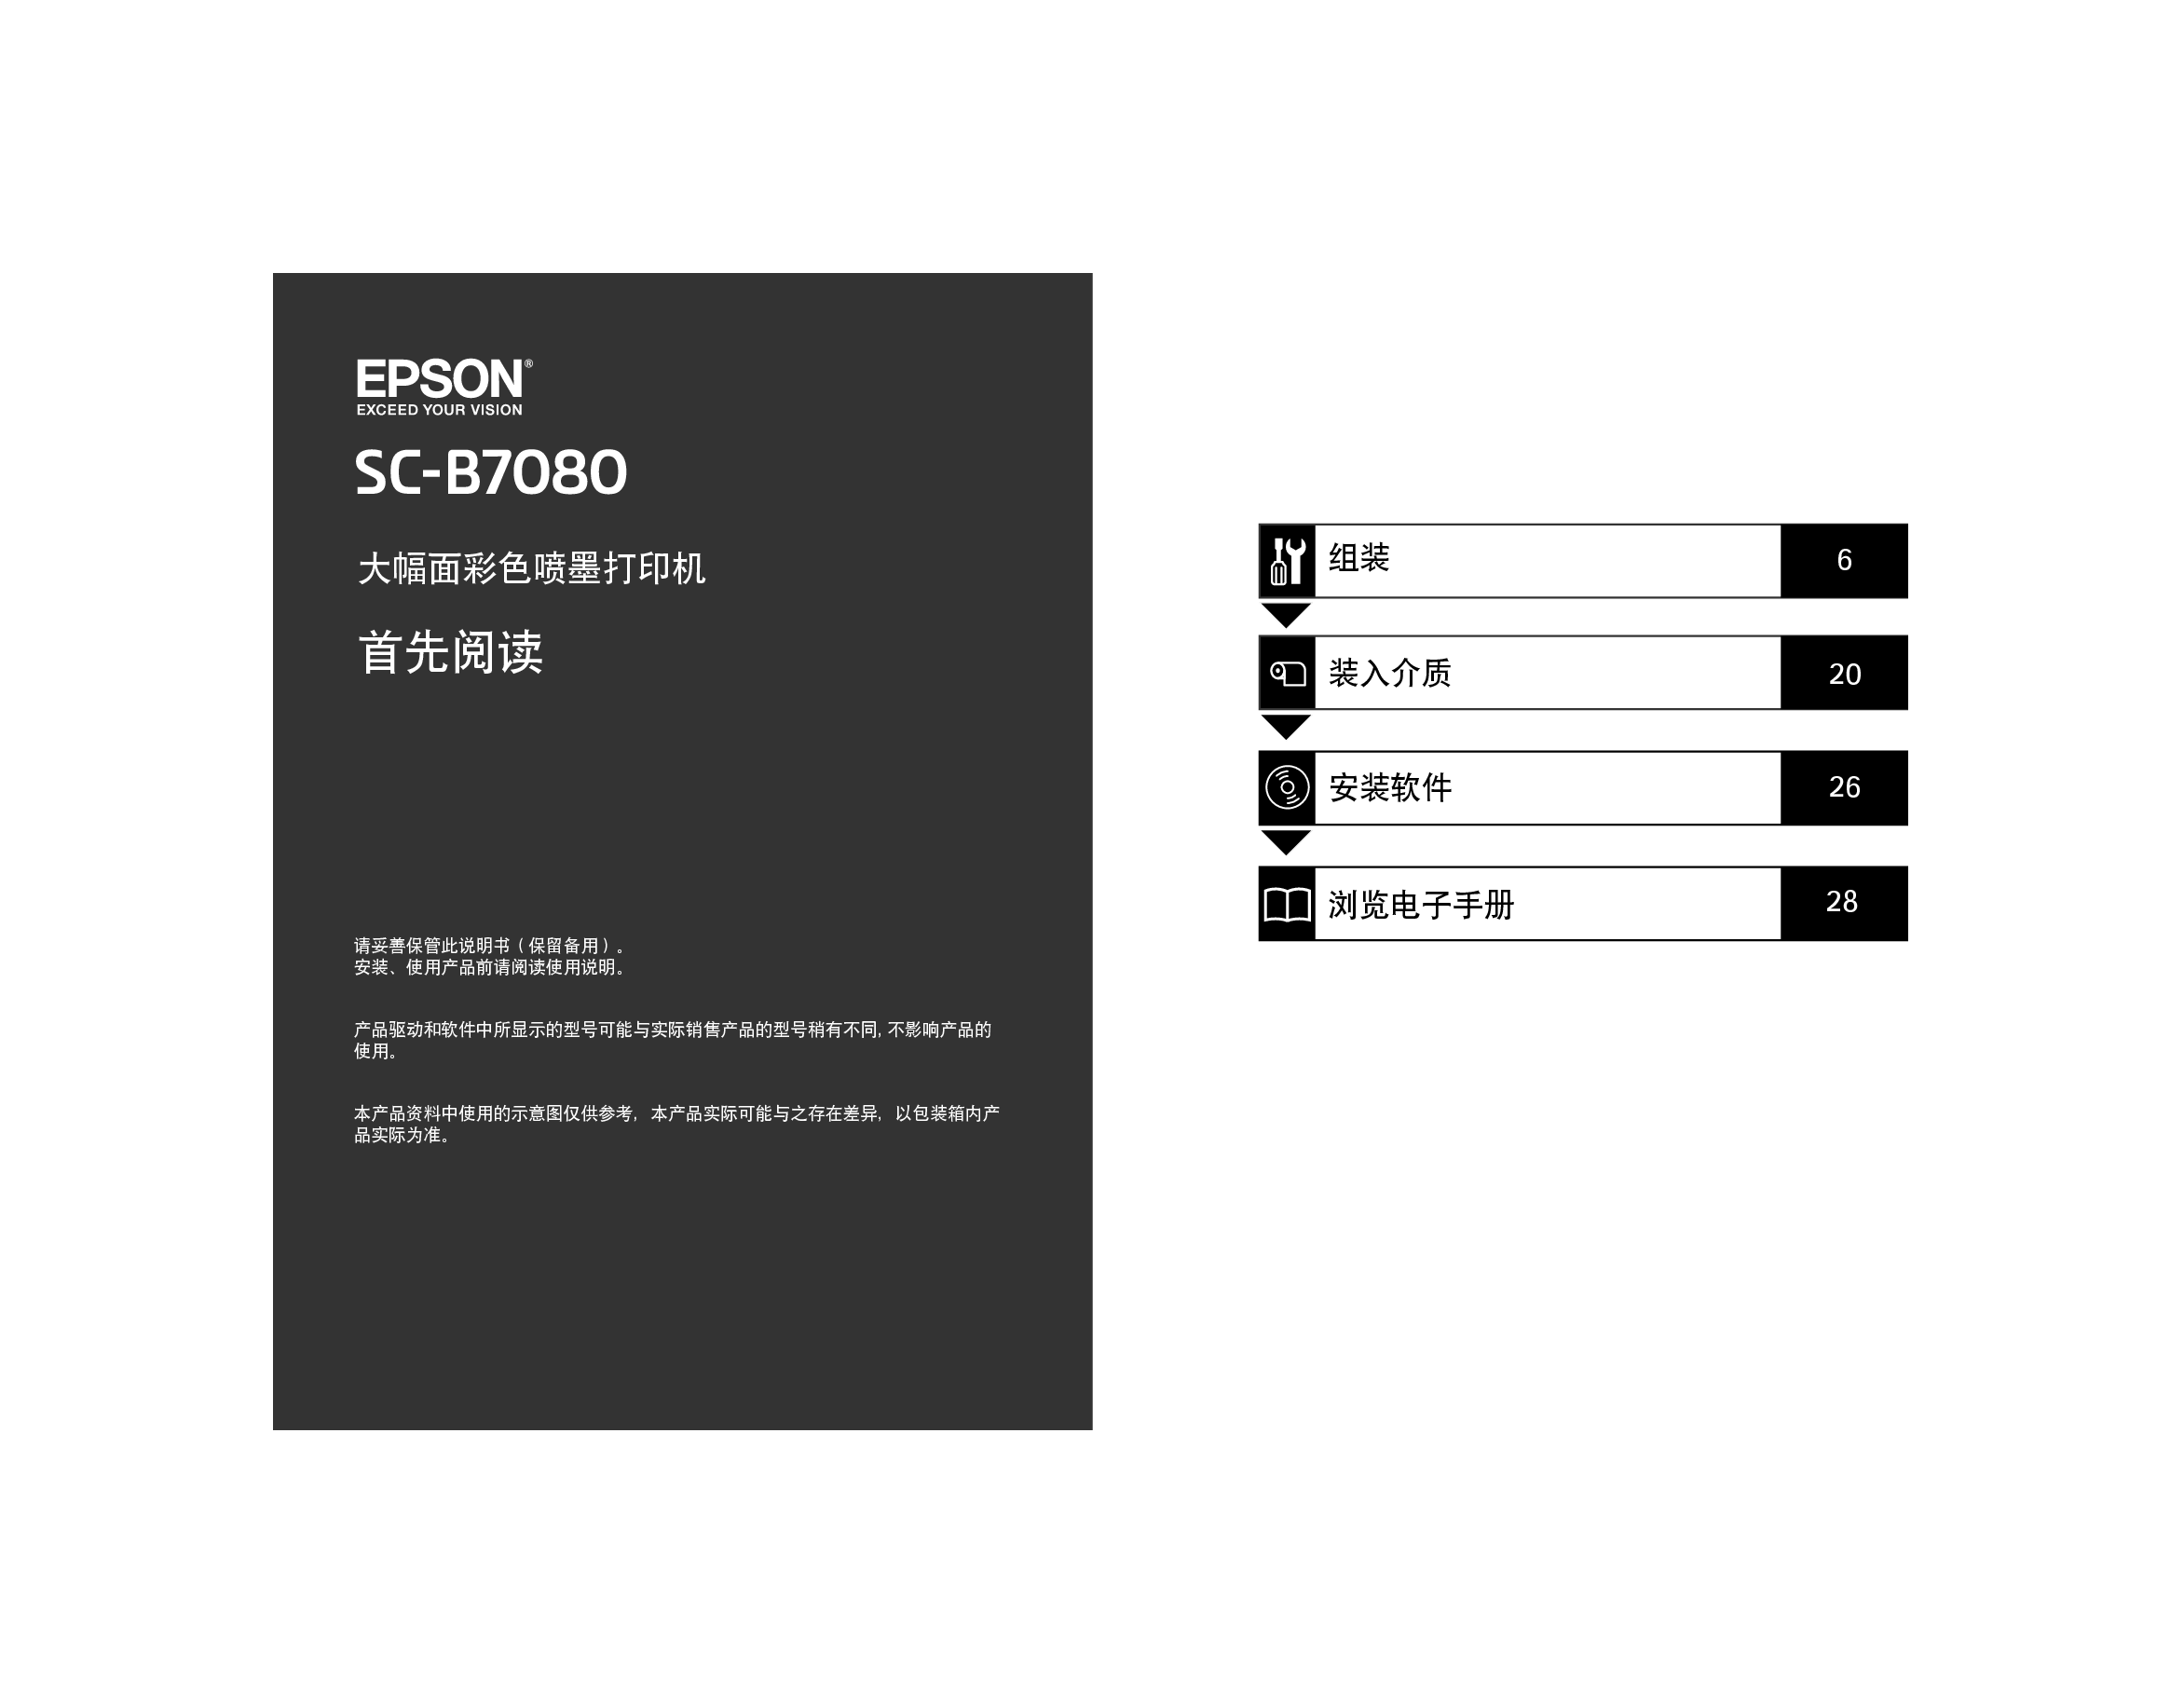 爱普生 Epson SC-B7080 快速用户指南 封面